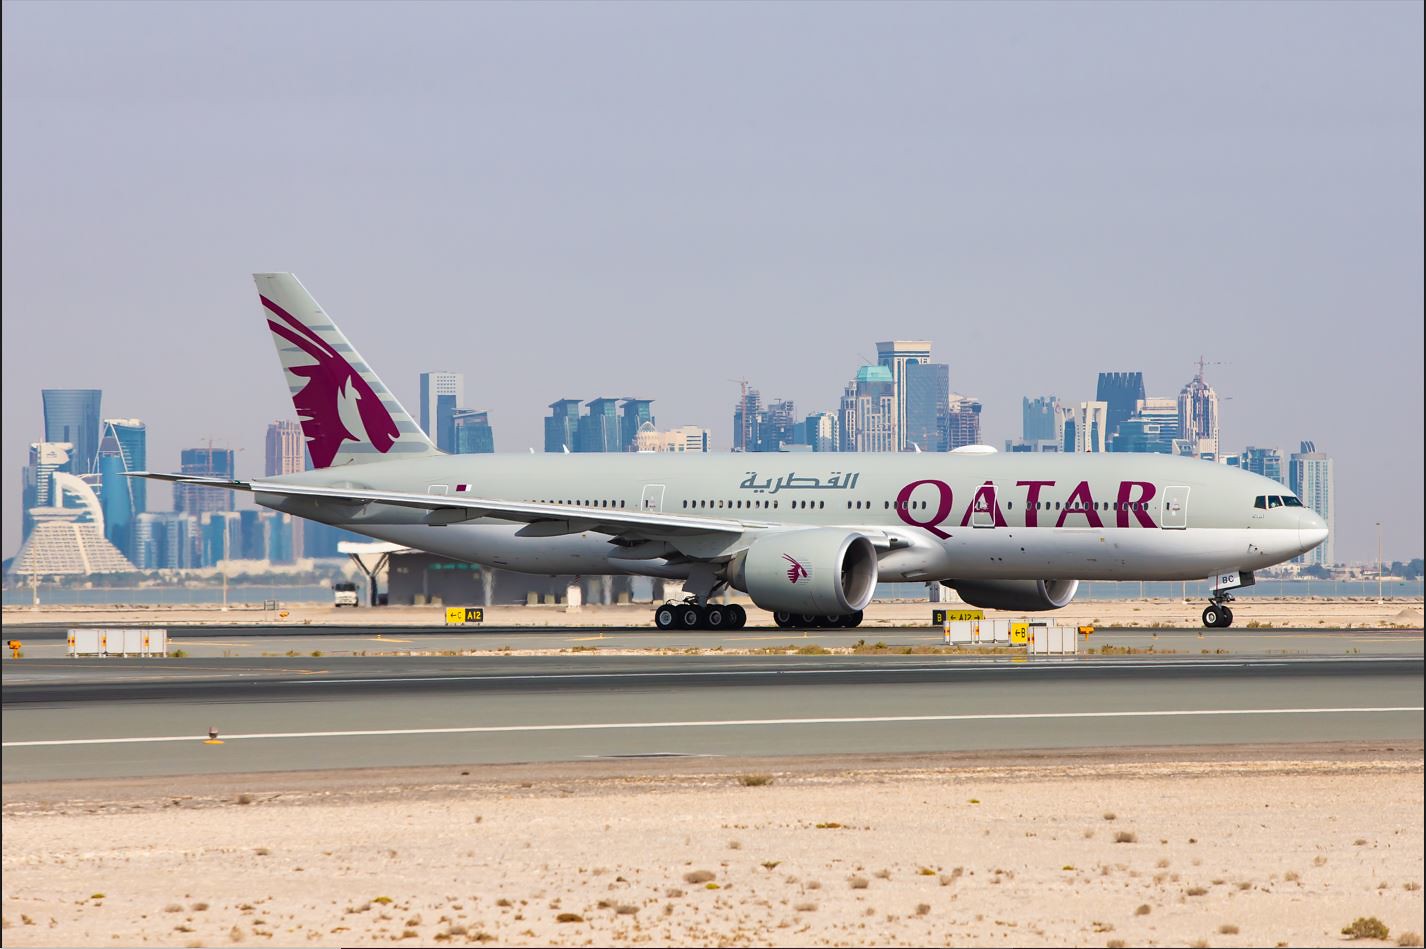 Qatar Airways Thailand